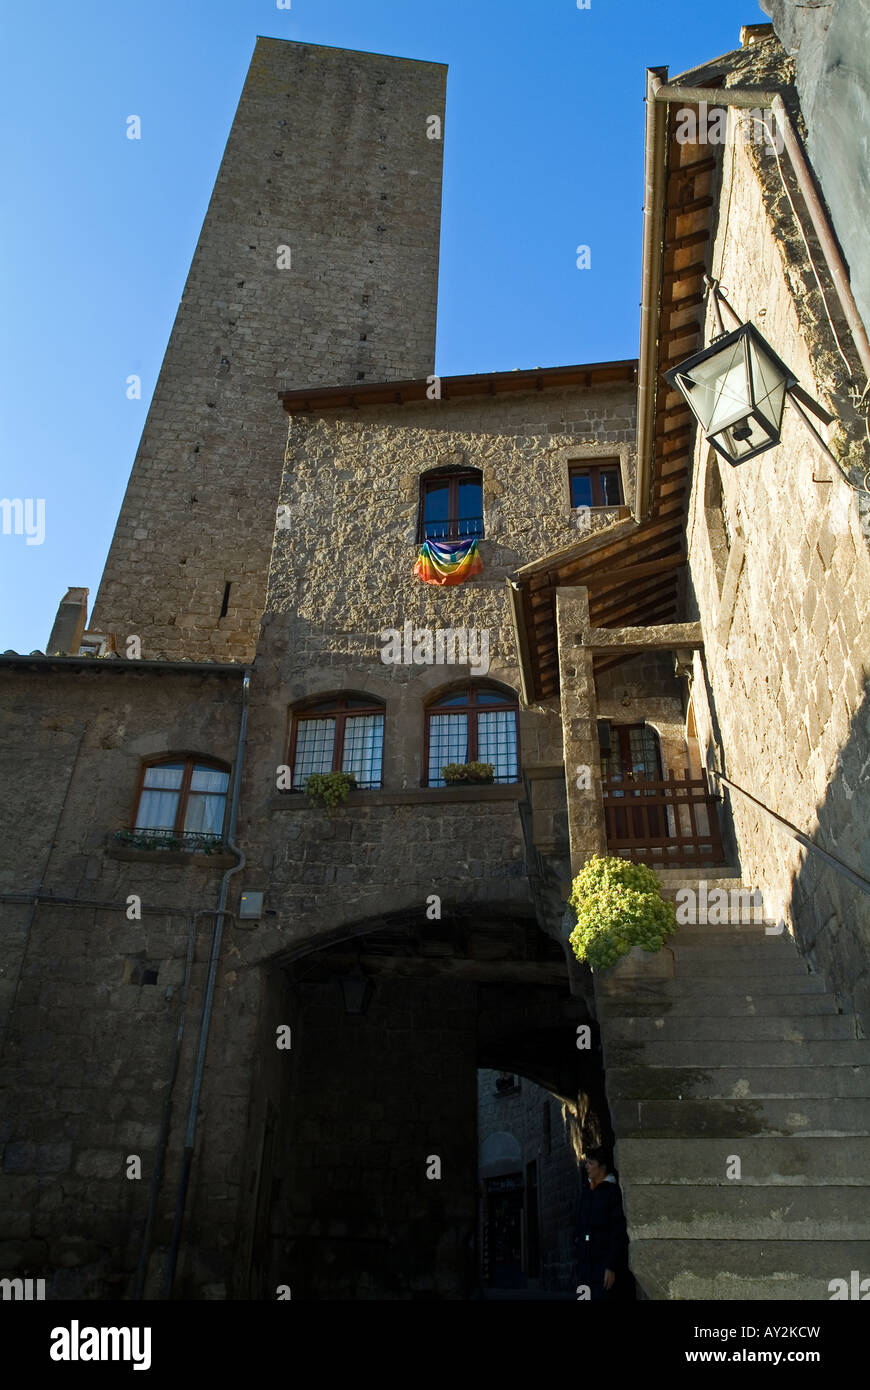 Quartier médiéval de St Pellegrino village à Viterbe en Italie Banque D'Images